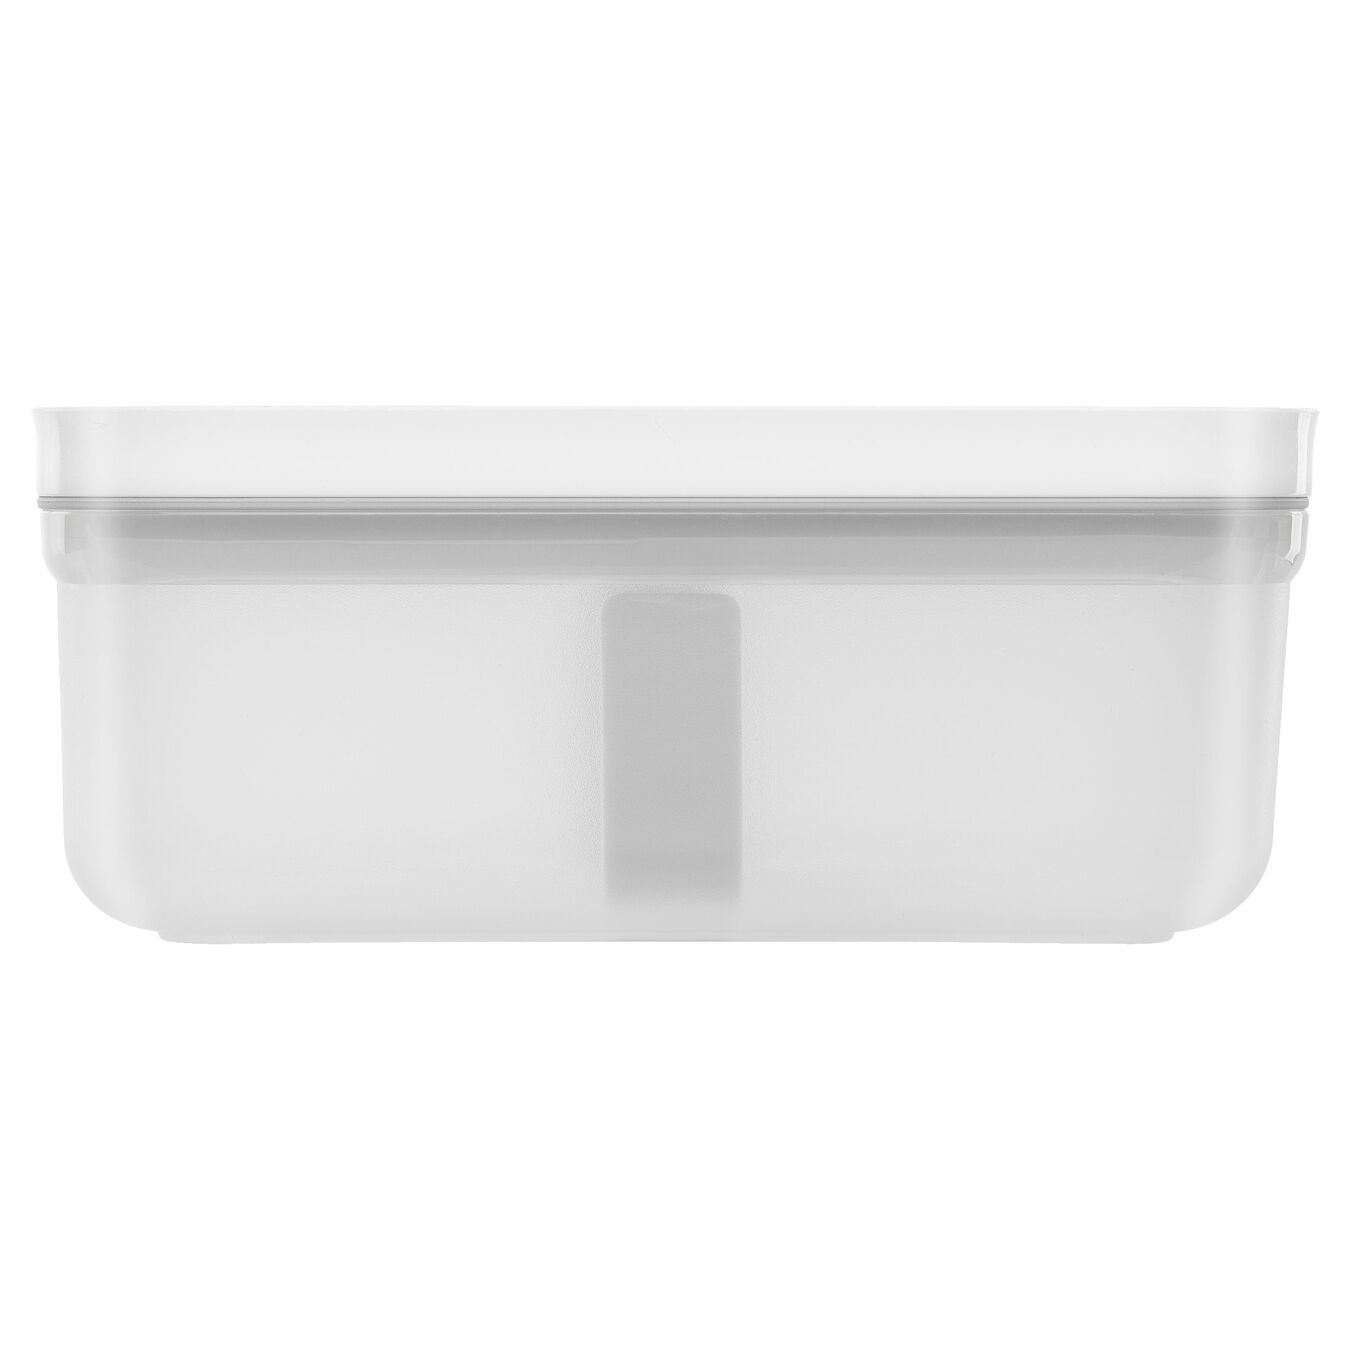 Lunch box sottovuoto M, plastica, semi transparente-grigio,,large 3